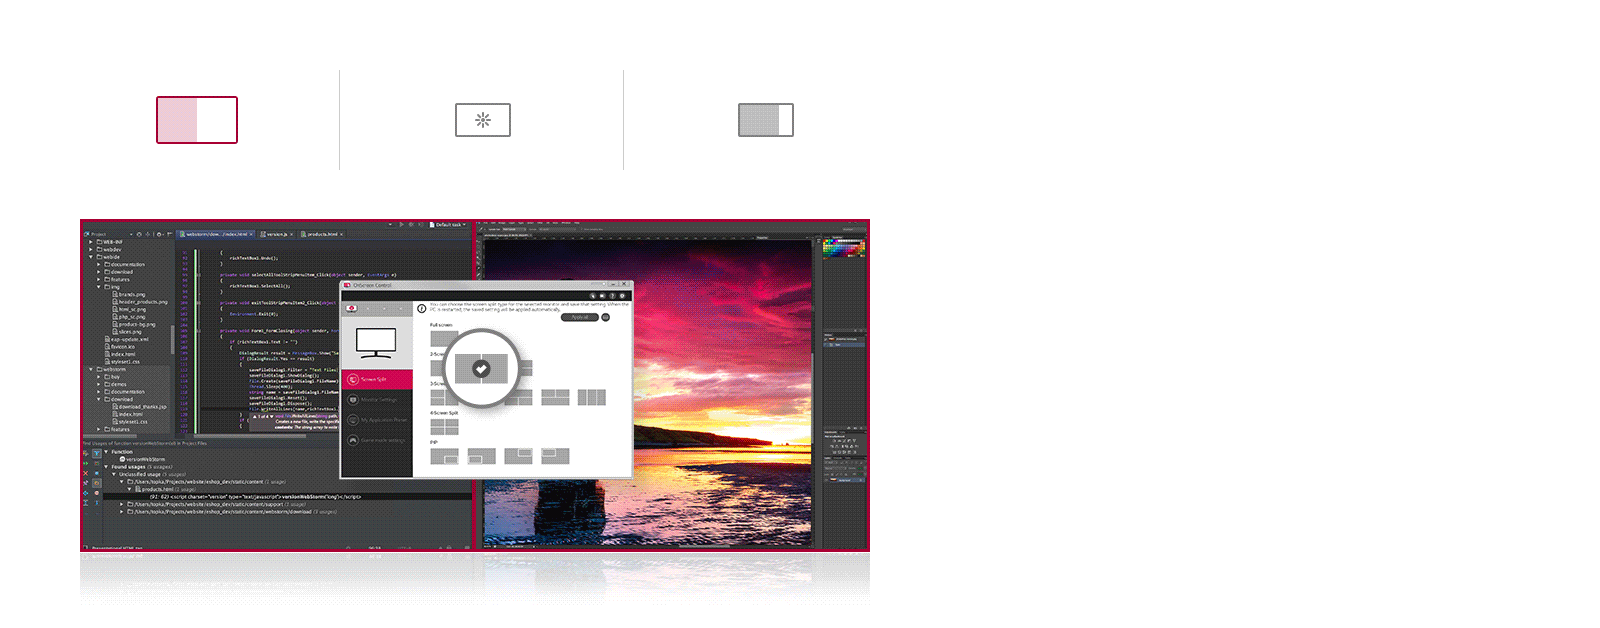 Puede personalizar el espacio de trabajo dividiendo la pantalla o ajustando las opciones básicas del monitor con solo unos pocos clics del mouse.